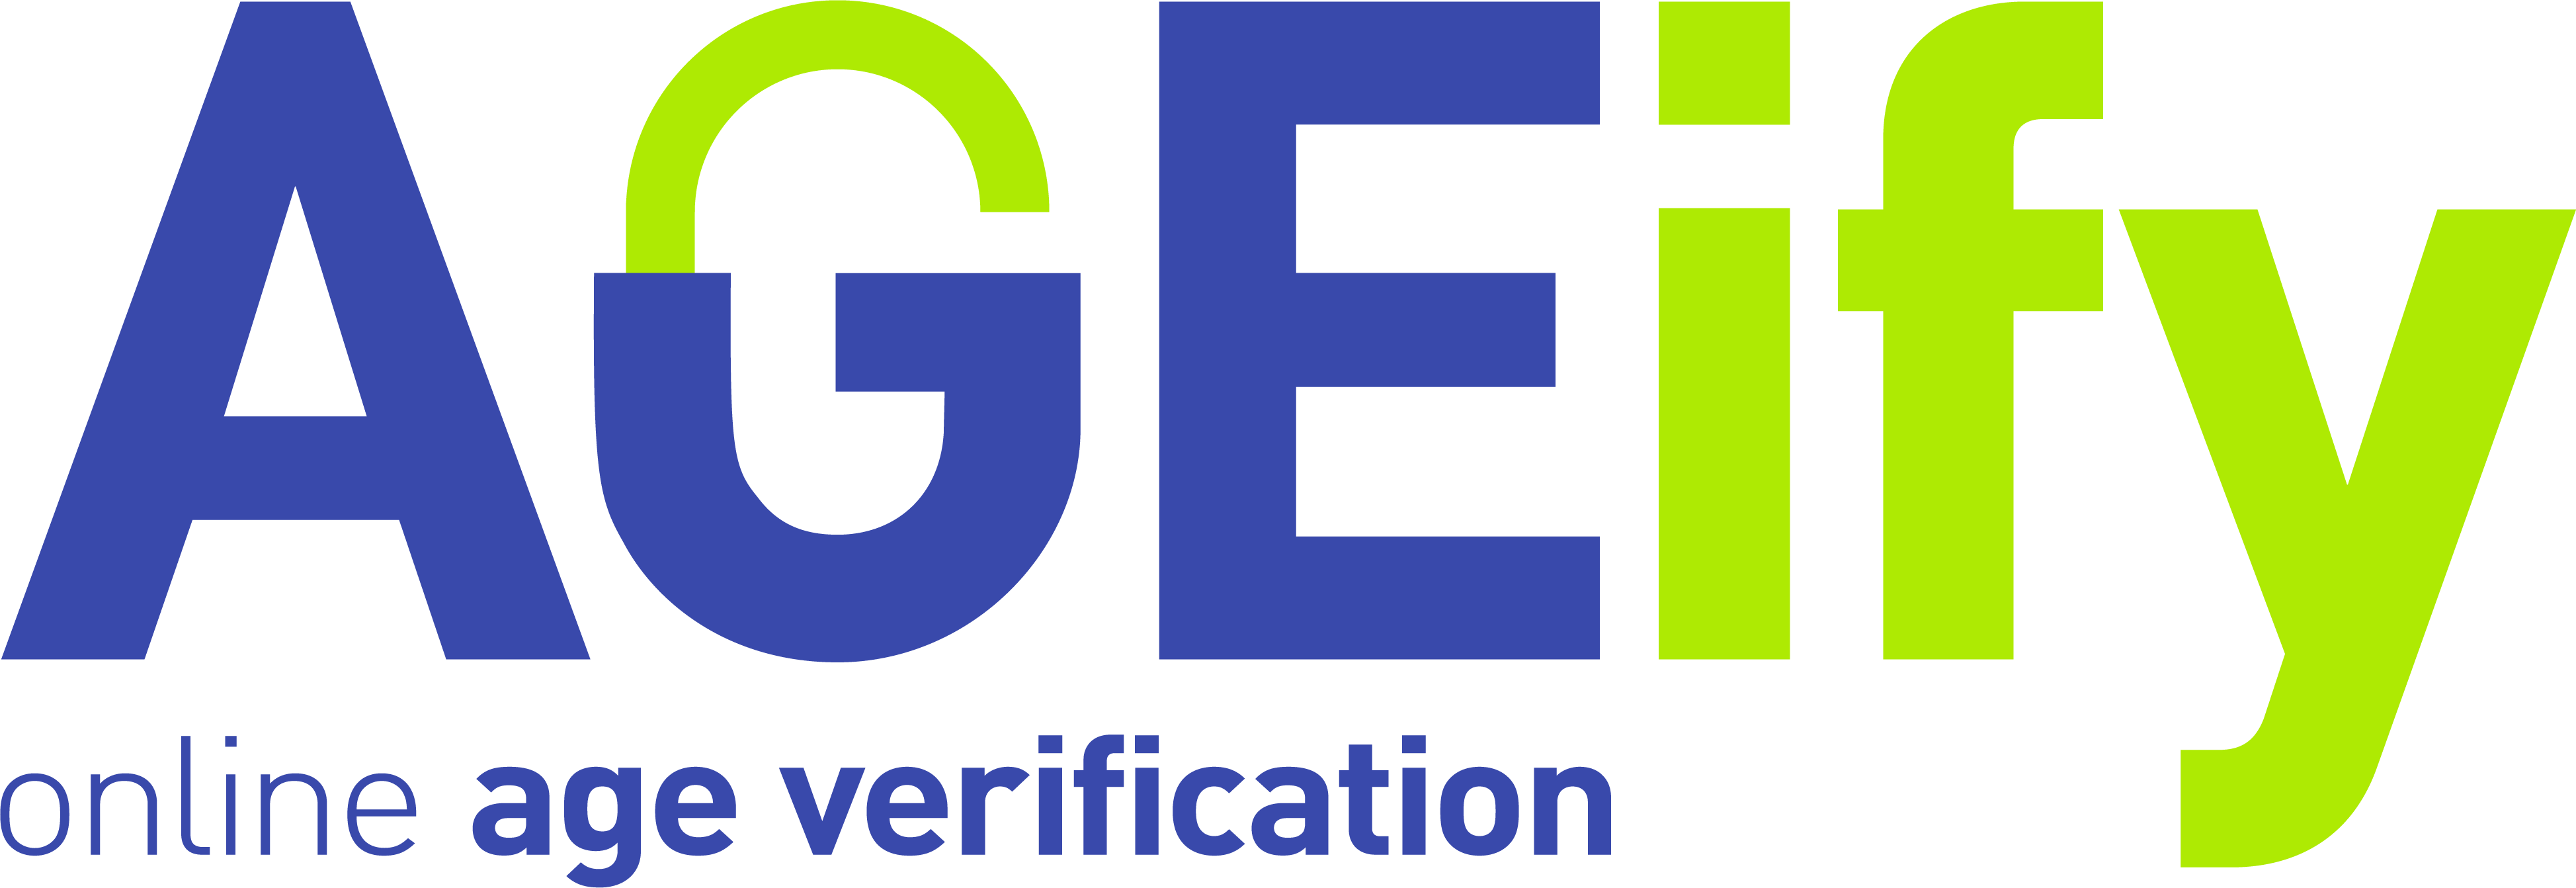 Ageify Logo